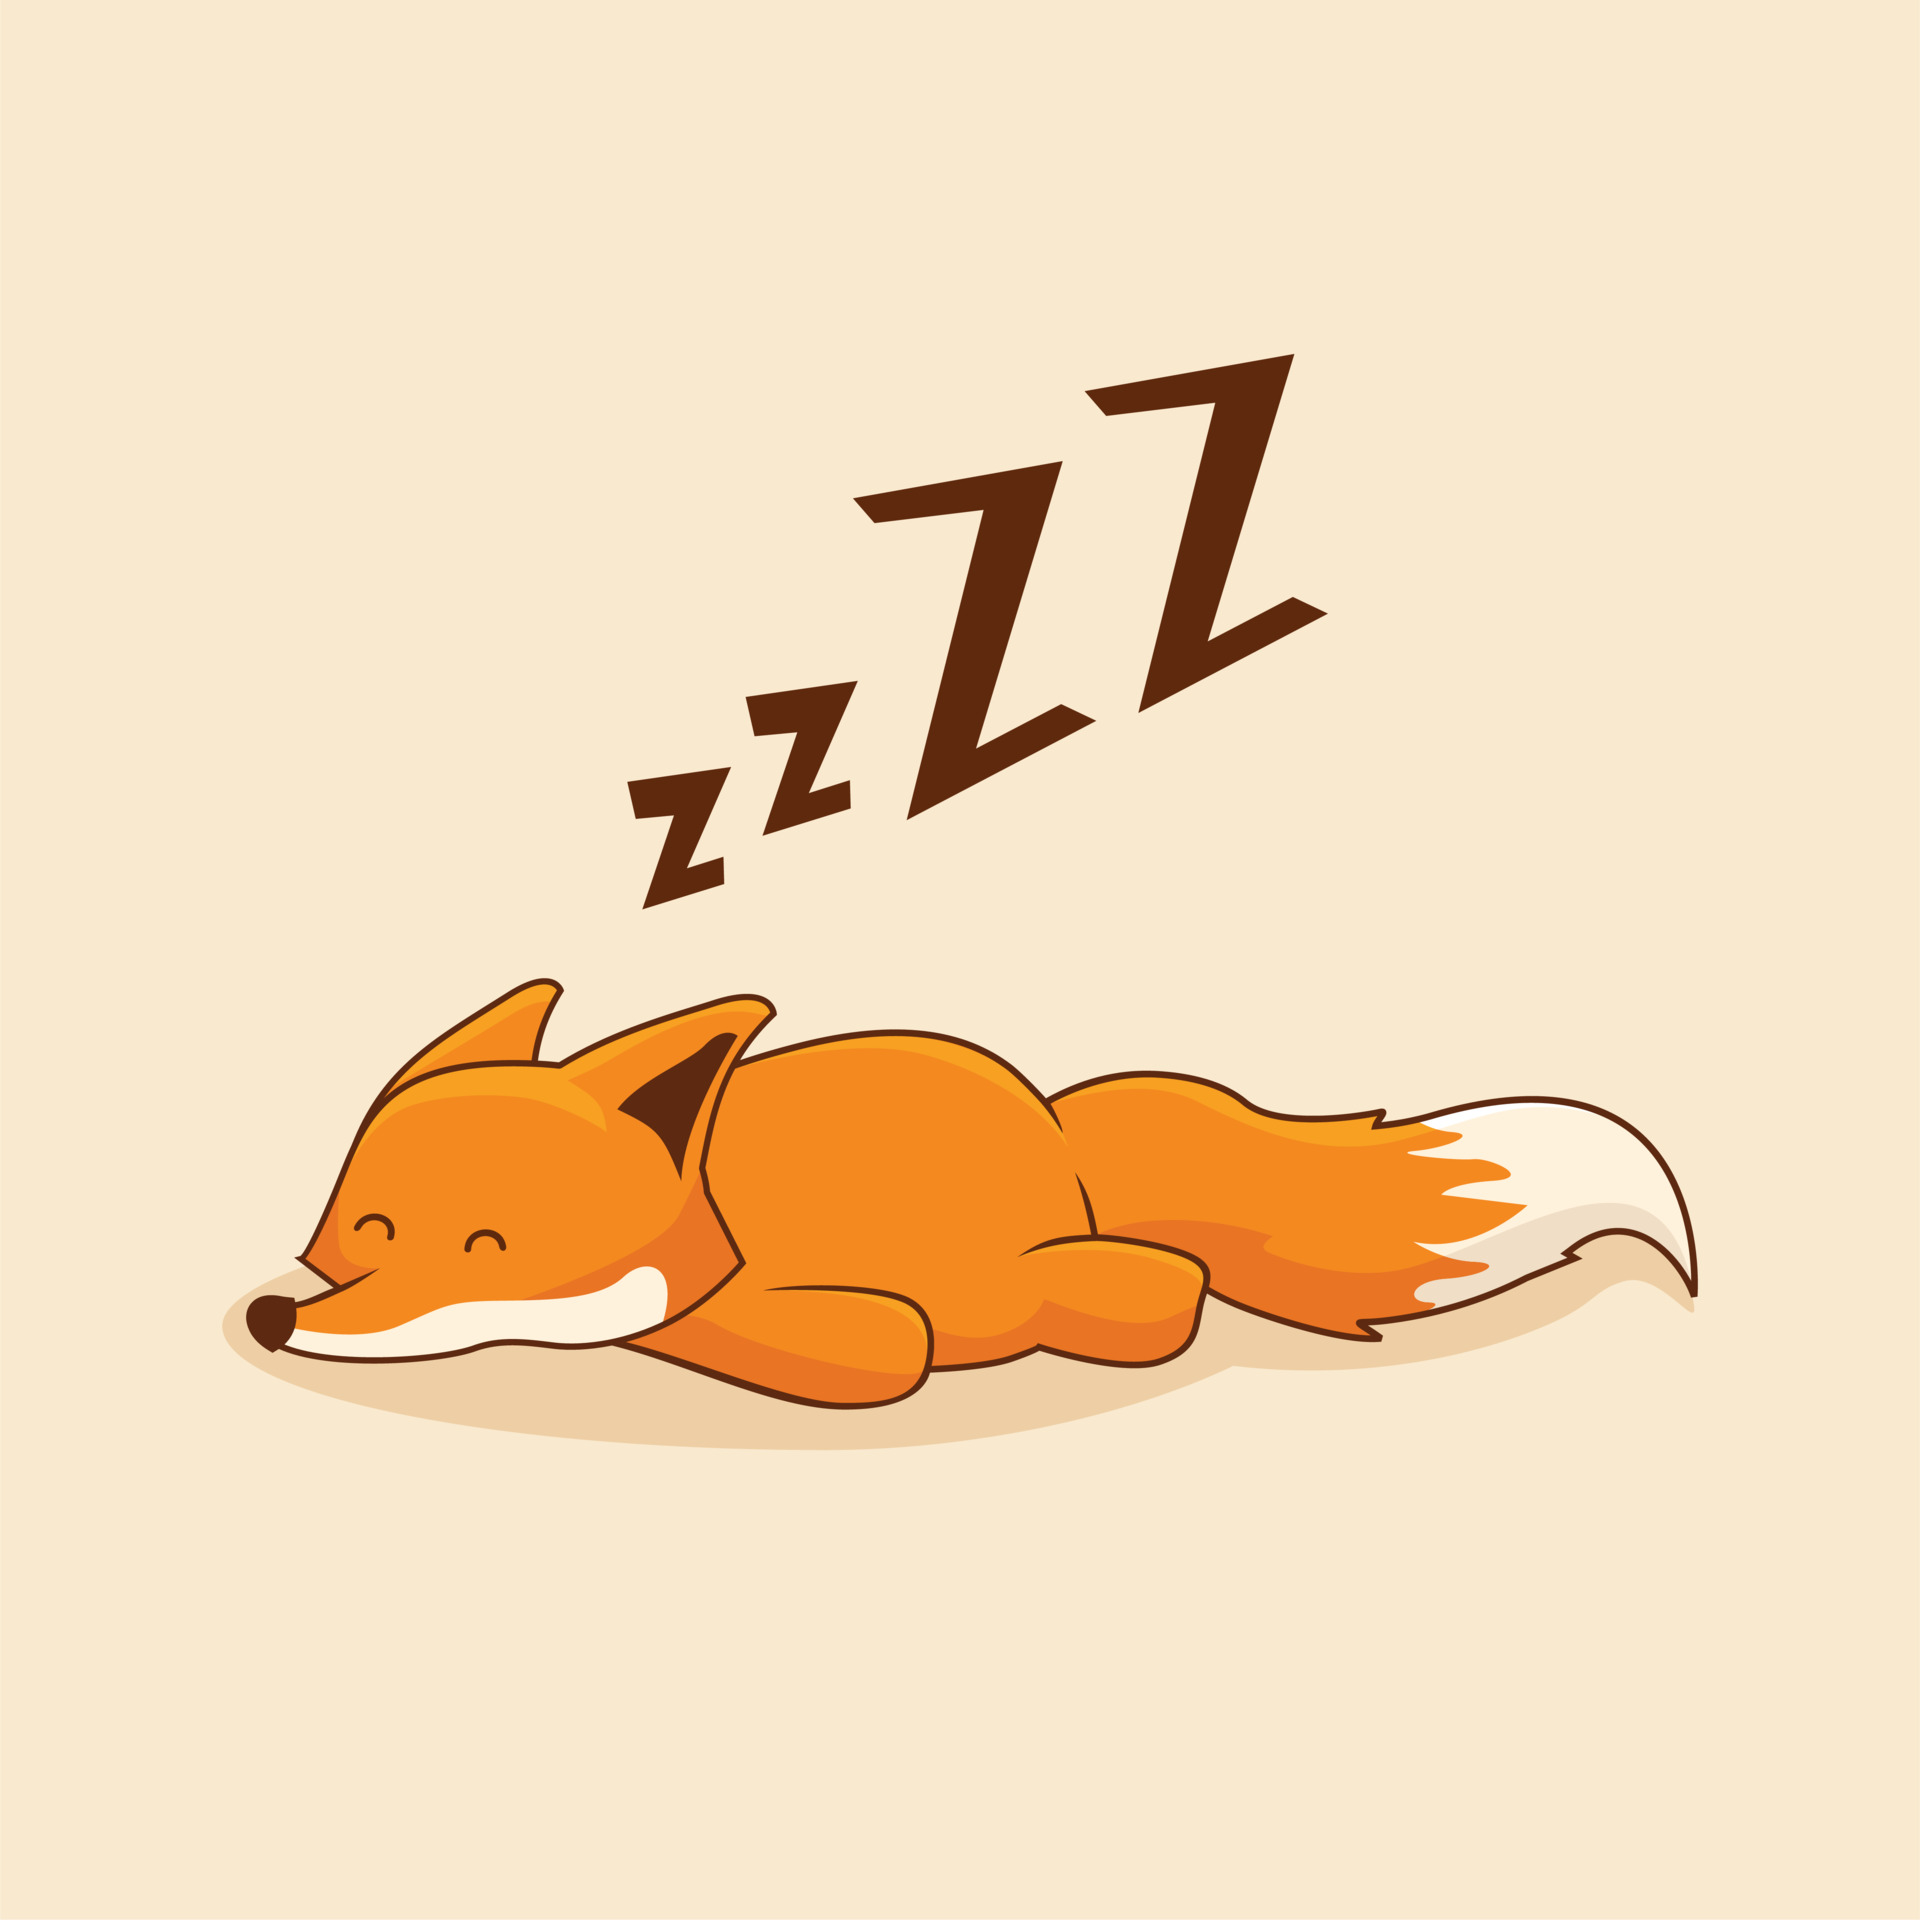 Lazy Fox Cartoon Sleep Animal 3545332 Vector Art at Vecteezy